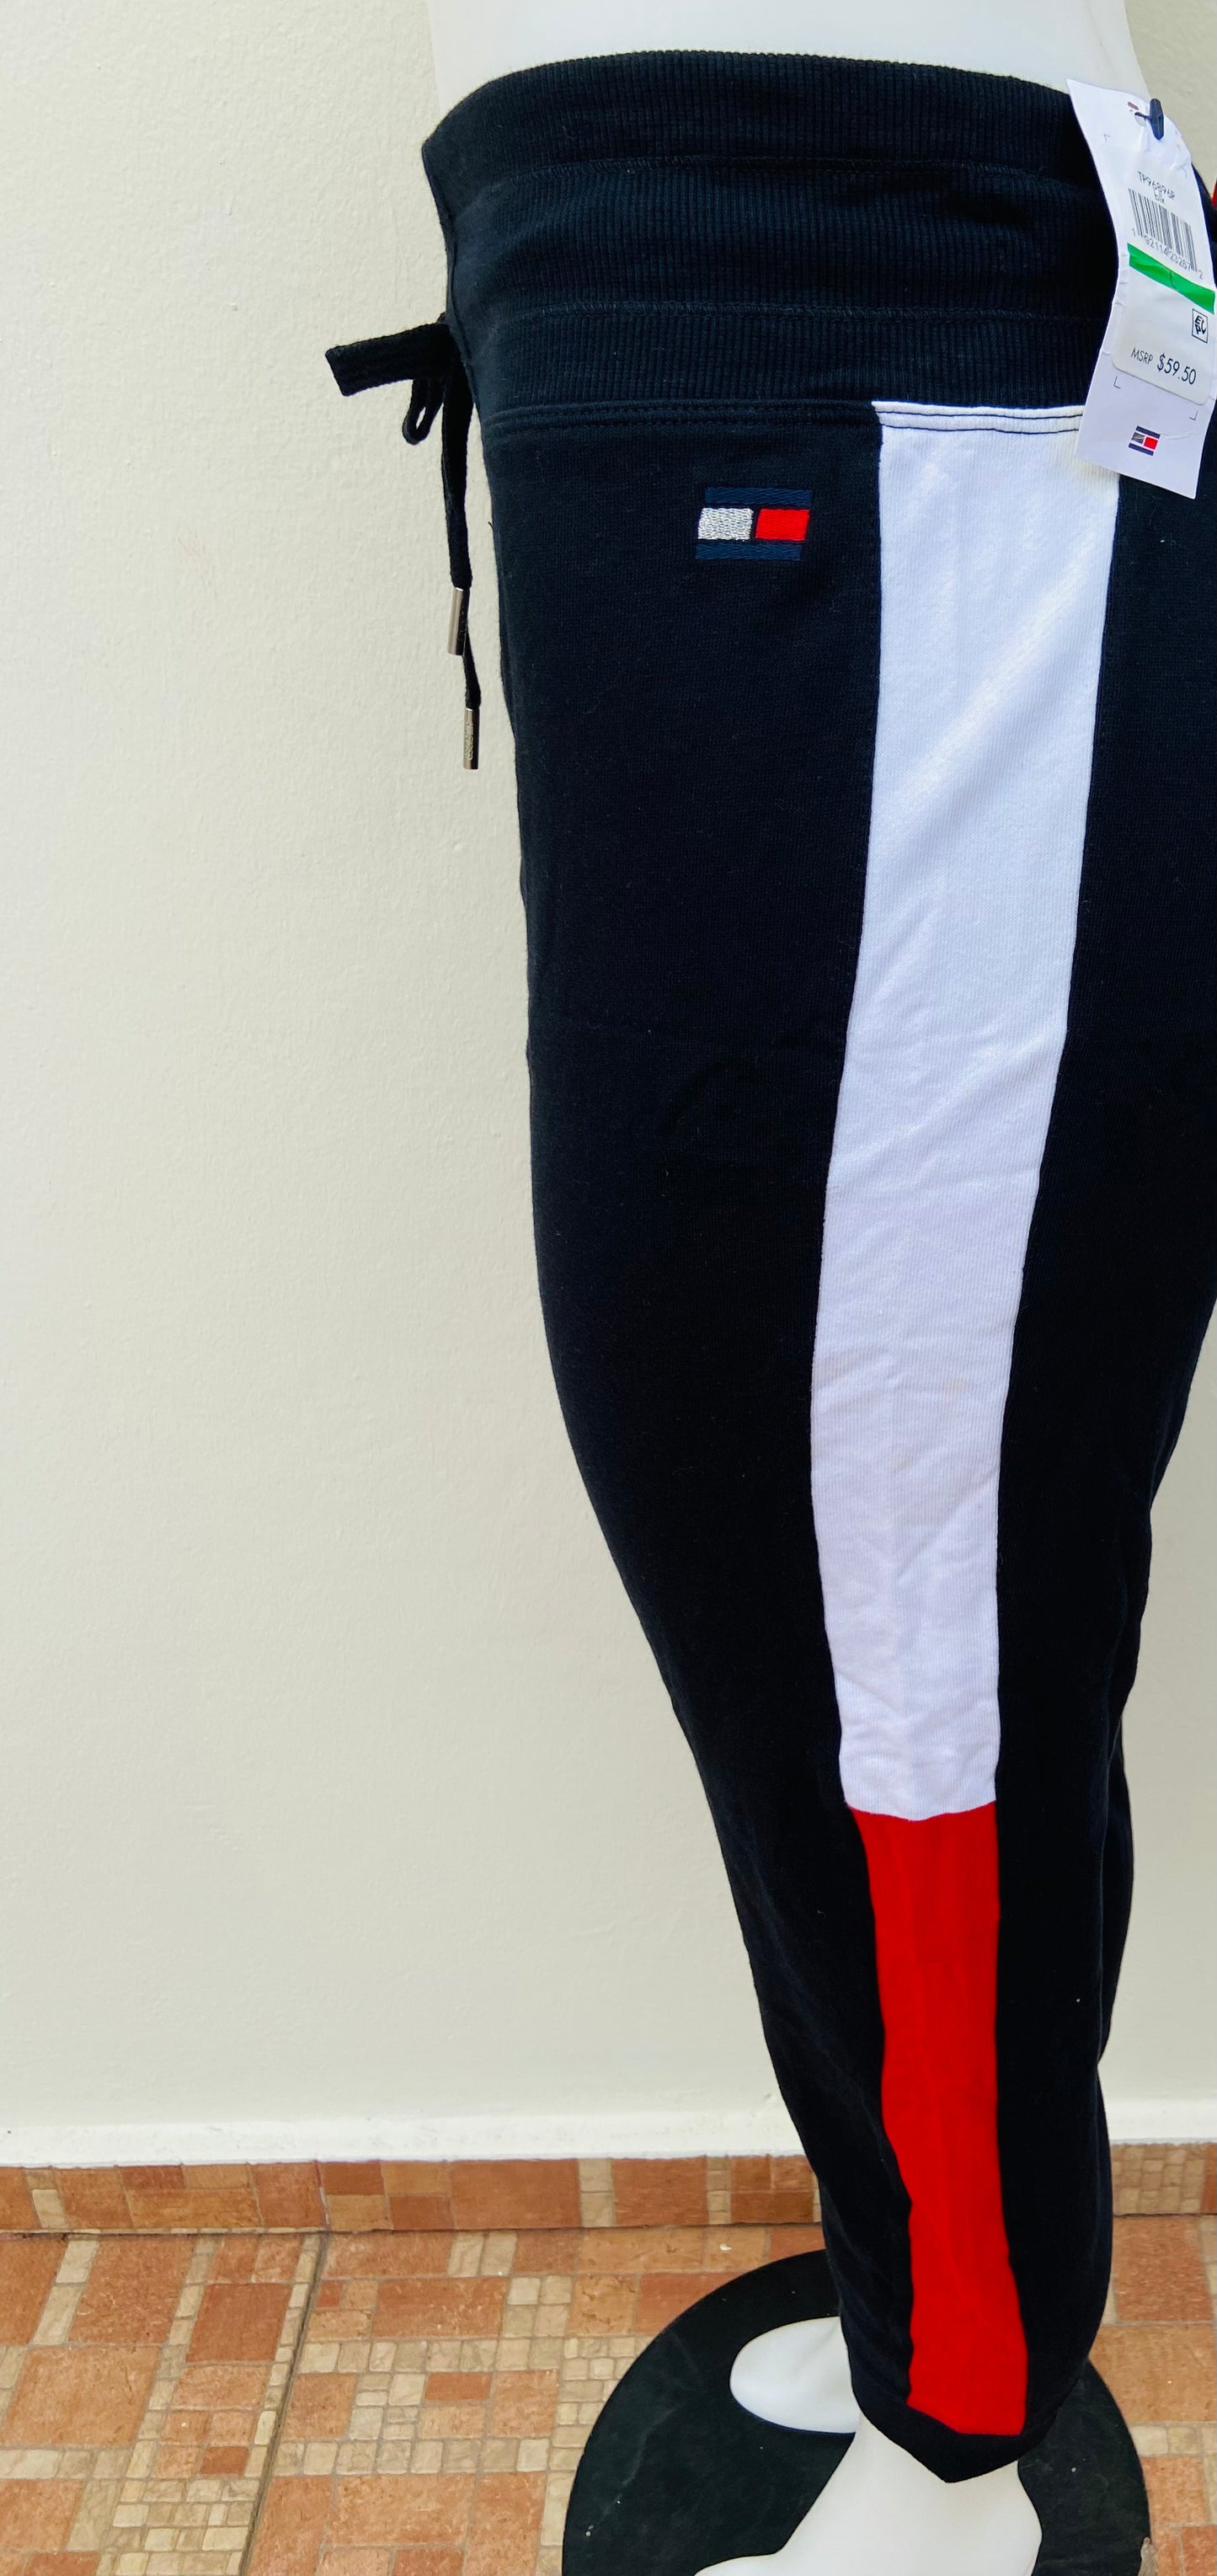 Jogger Tommy Hilfiger original negro con raya blanca y roja en los lados y lazos ajustables.